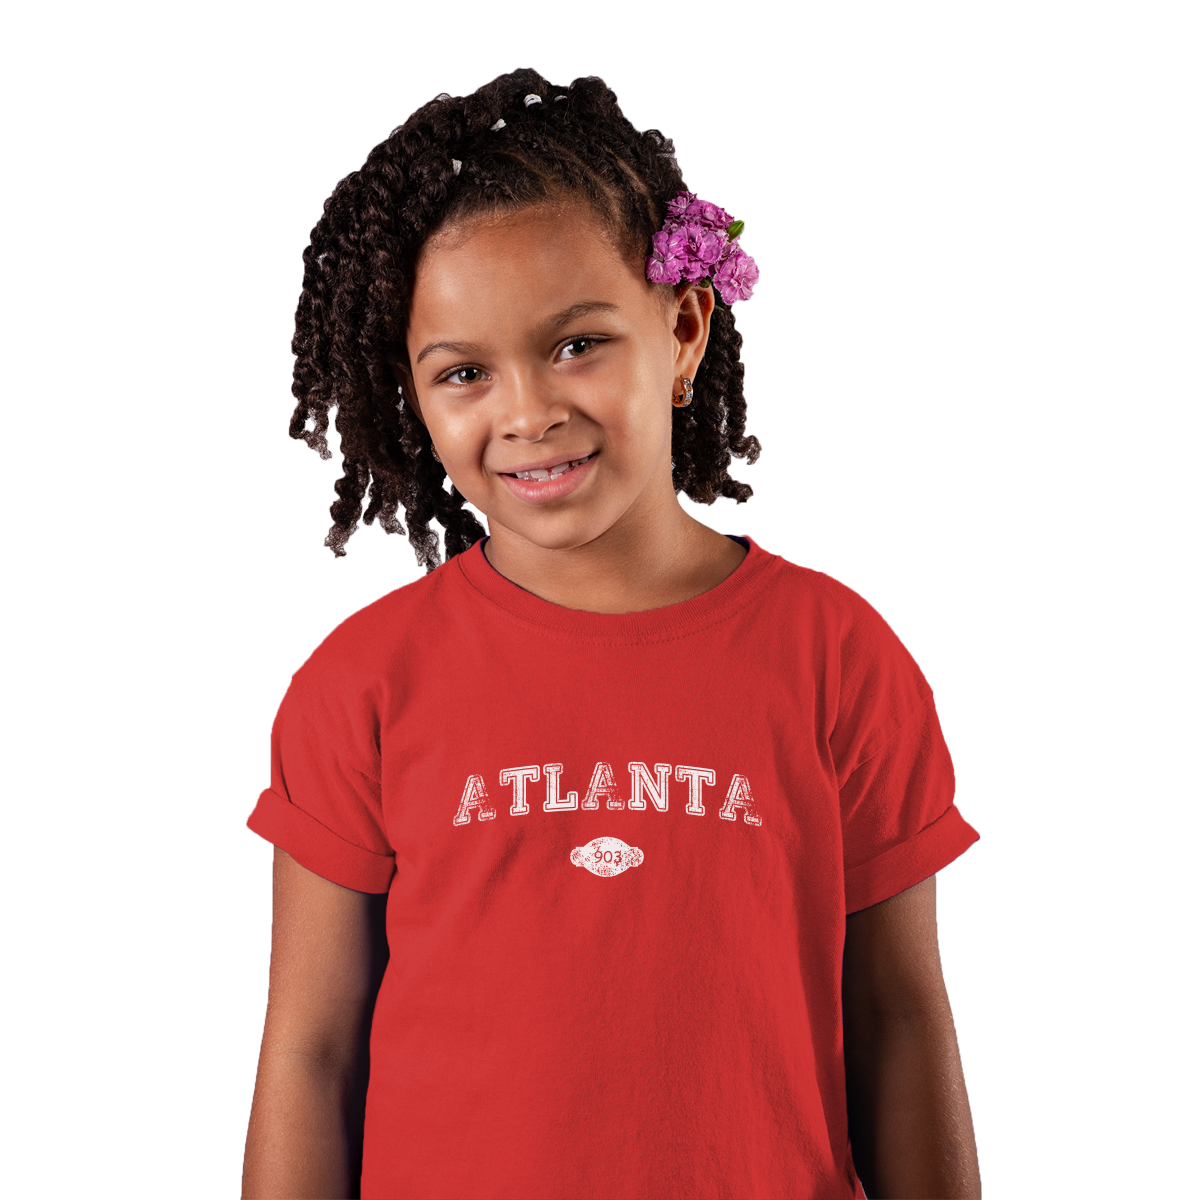 Atlanta 903 Represent Toddler T-shirt | Red